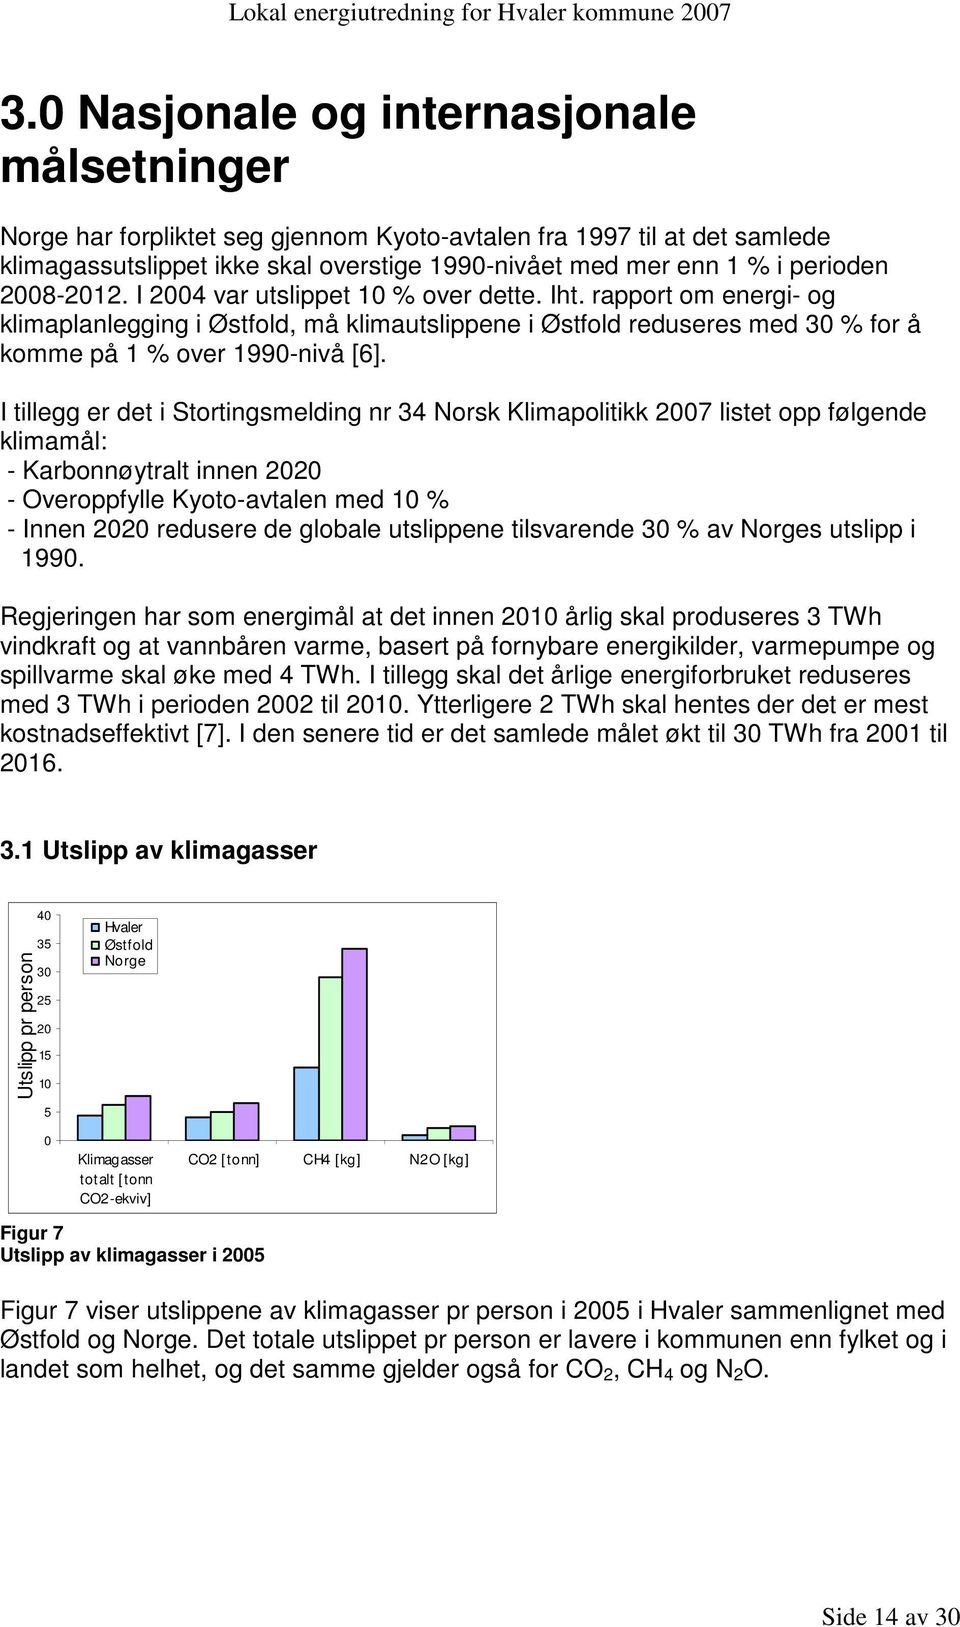 I tillegg er det i Stortingsmelding nr 34 Norsk Klimapolitikk 2007 listet opp følgende klimamål: - Karbonnøytralt innen 2020 - Overoppfylle Kyoto-avtalen med 10 % - Innen 2020 redusere de globale